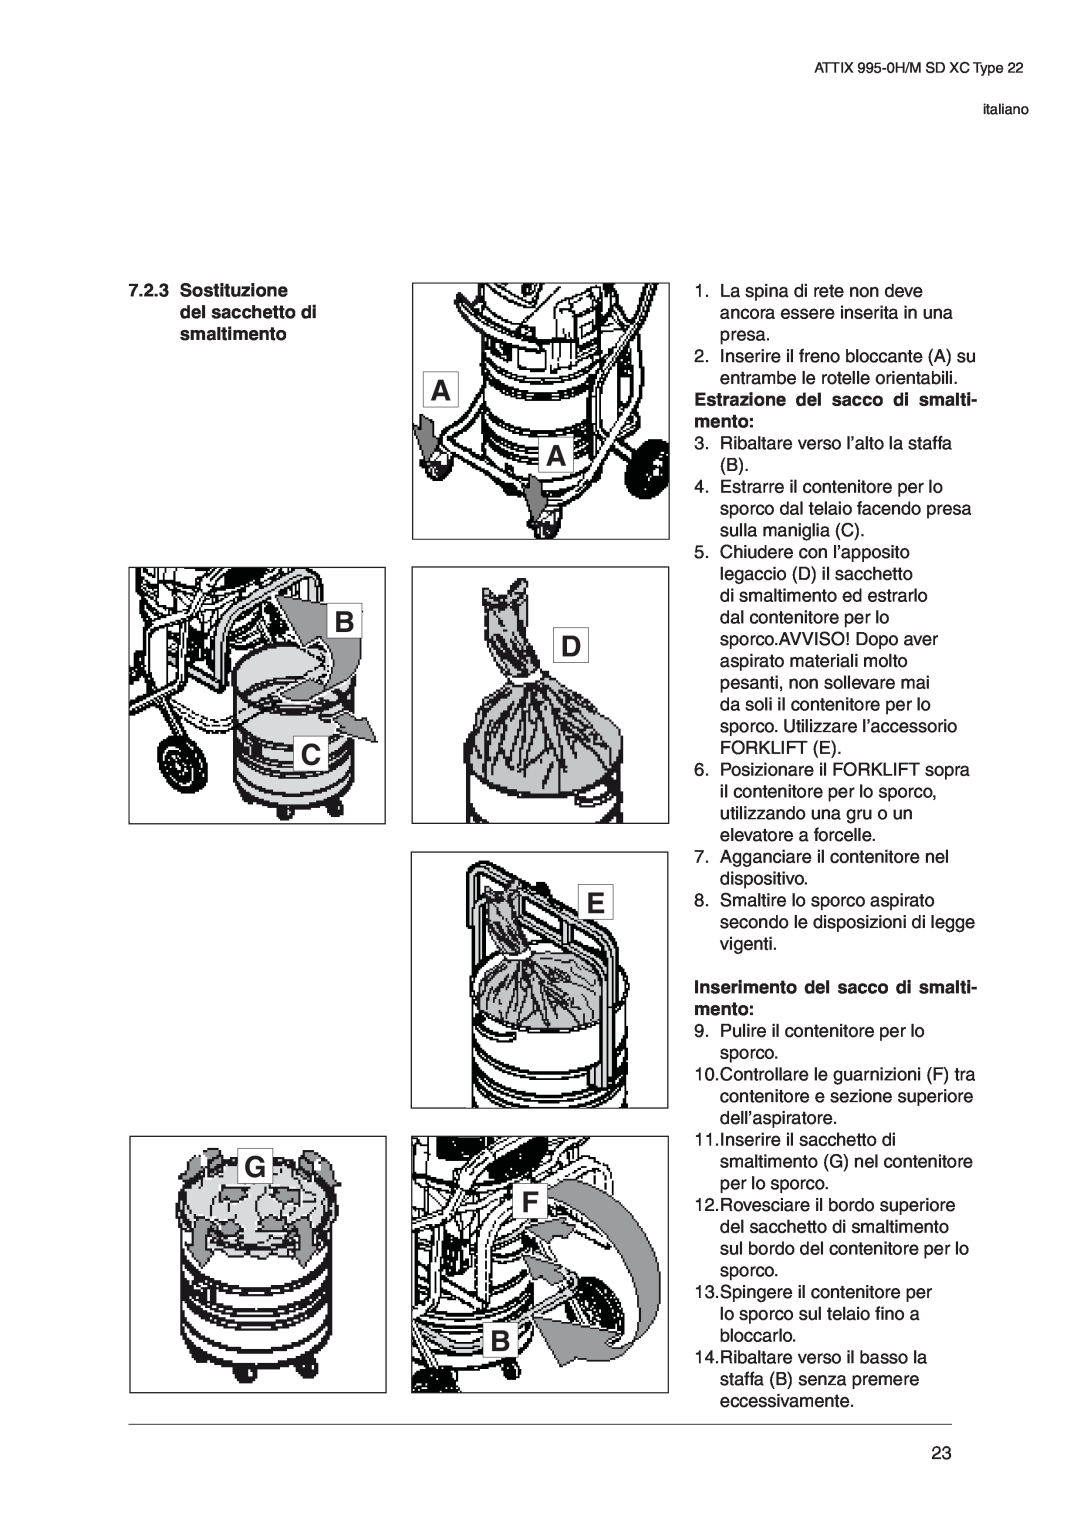 Nilfisk-ALTO 995-0H/M SD XC operating instructions B C G, A A D E F B, 7.2.3Sostituzione del sacchetto di smaltimento 